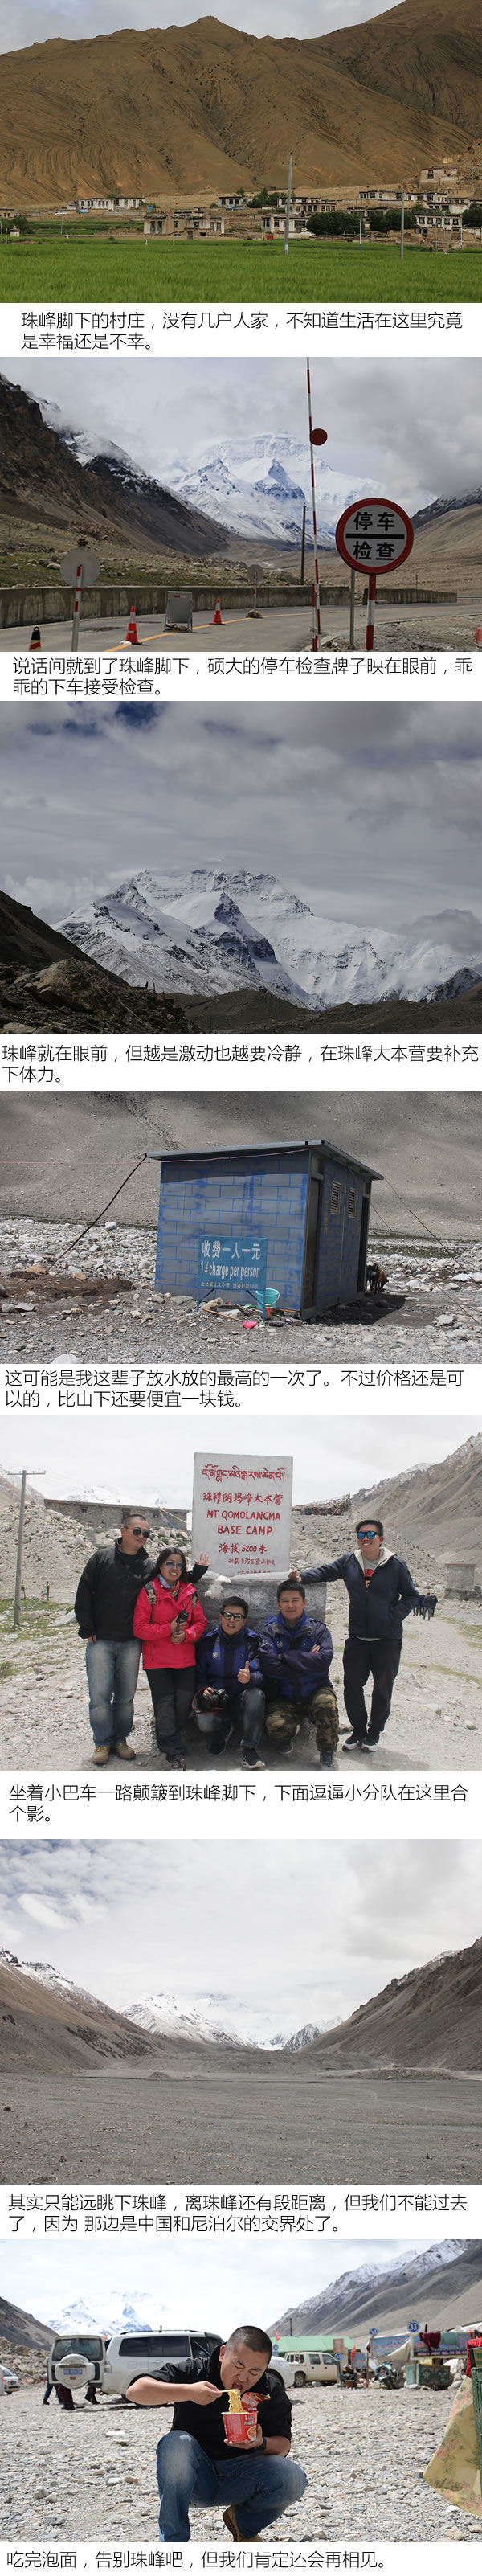 红票儿和信仰谁更大 别克寰行中国西藏行-图1